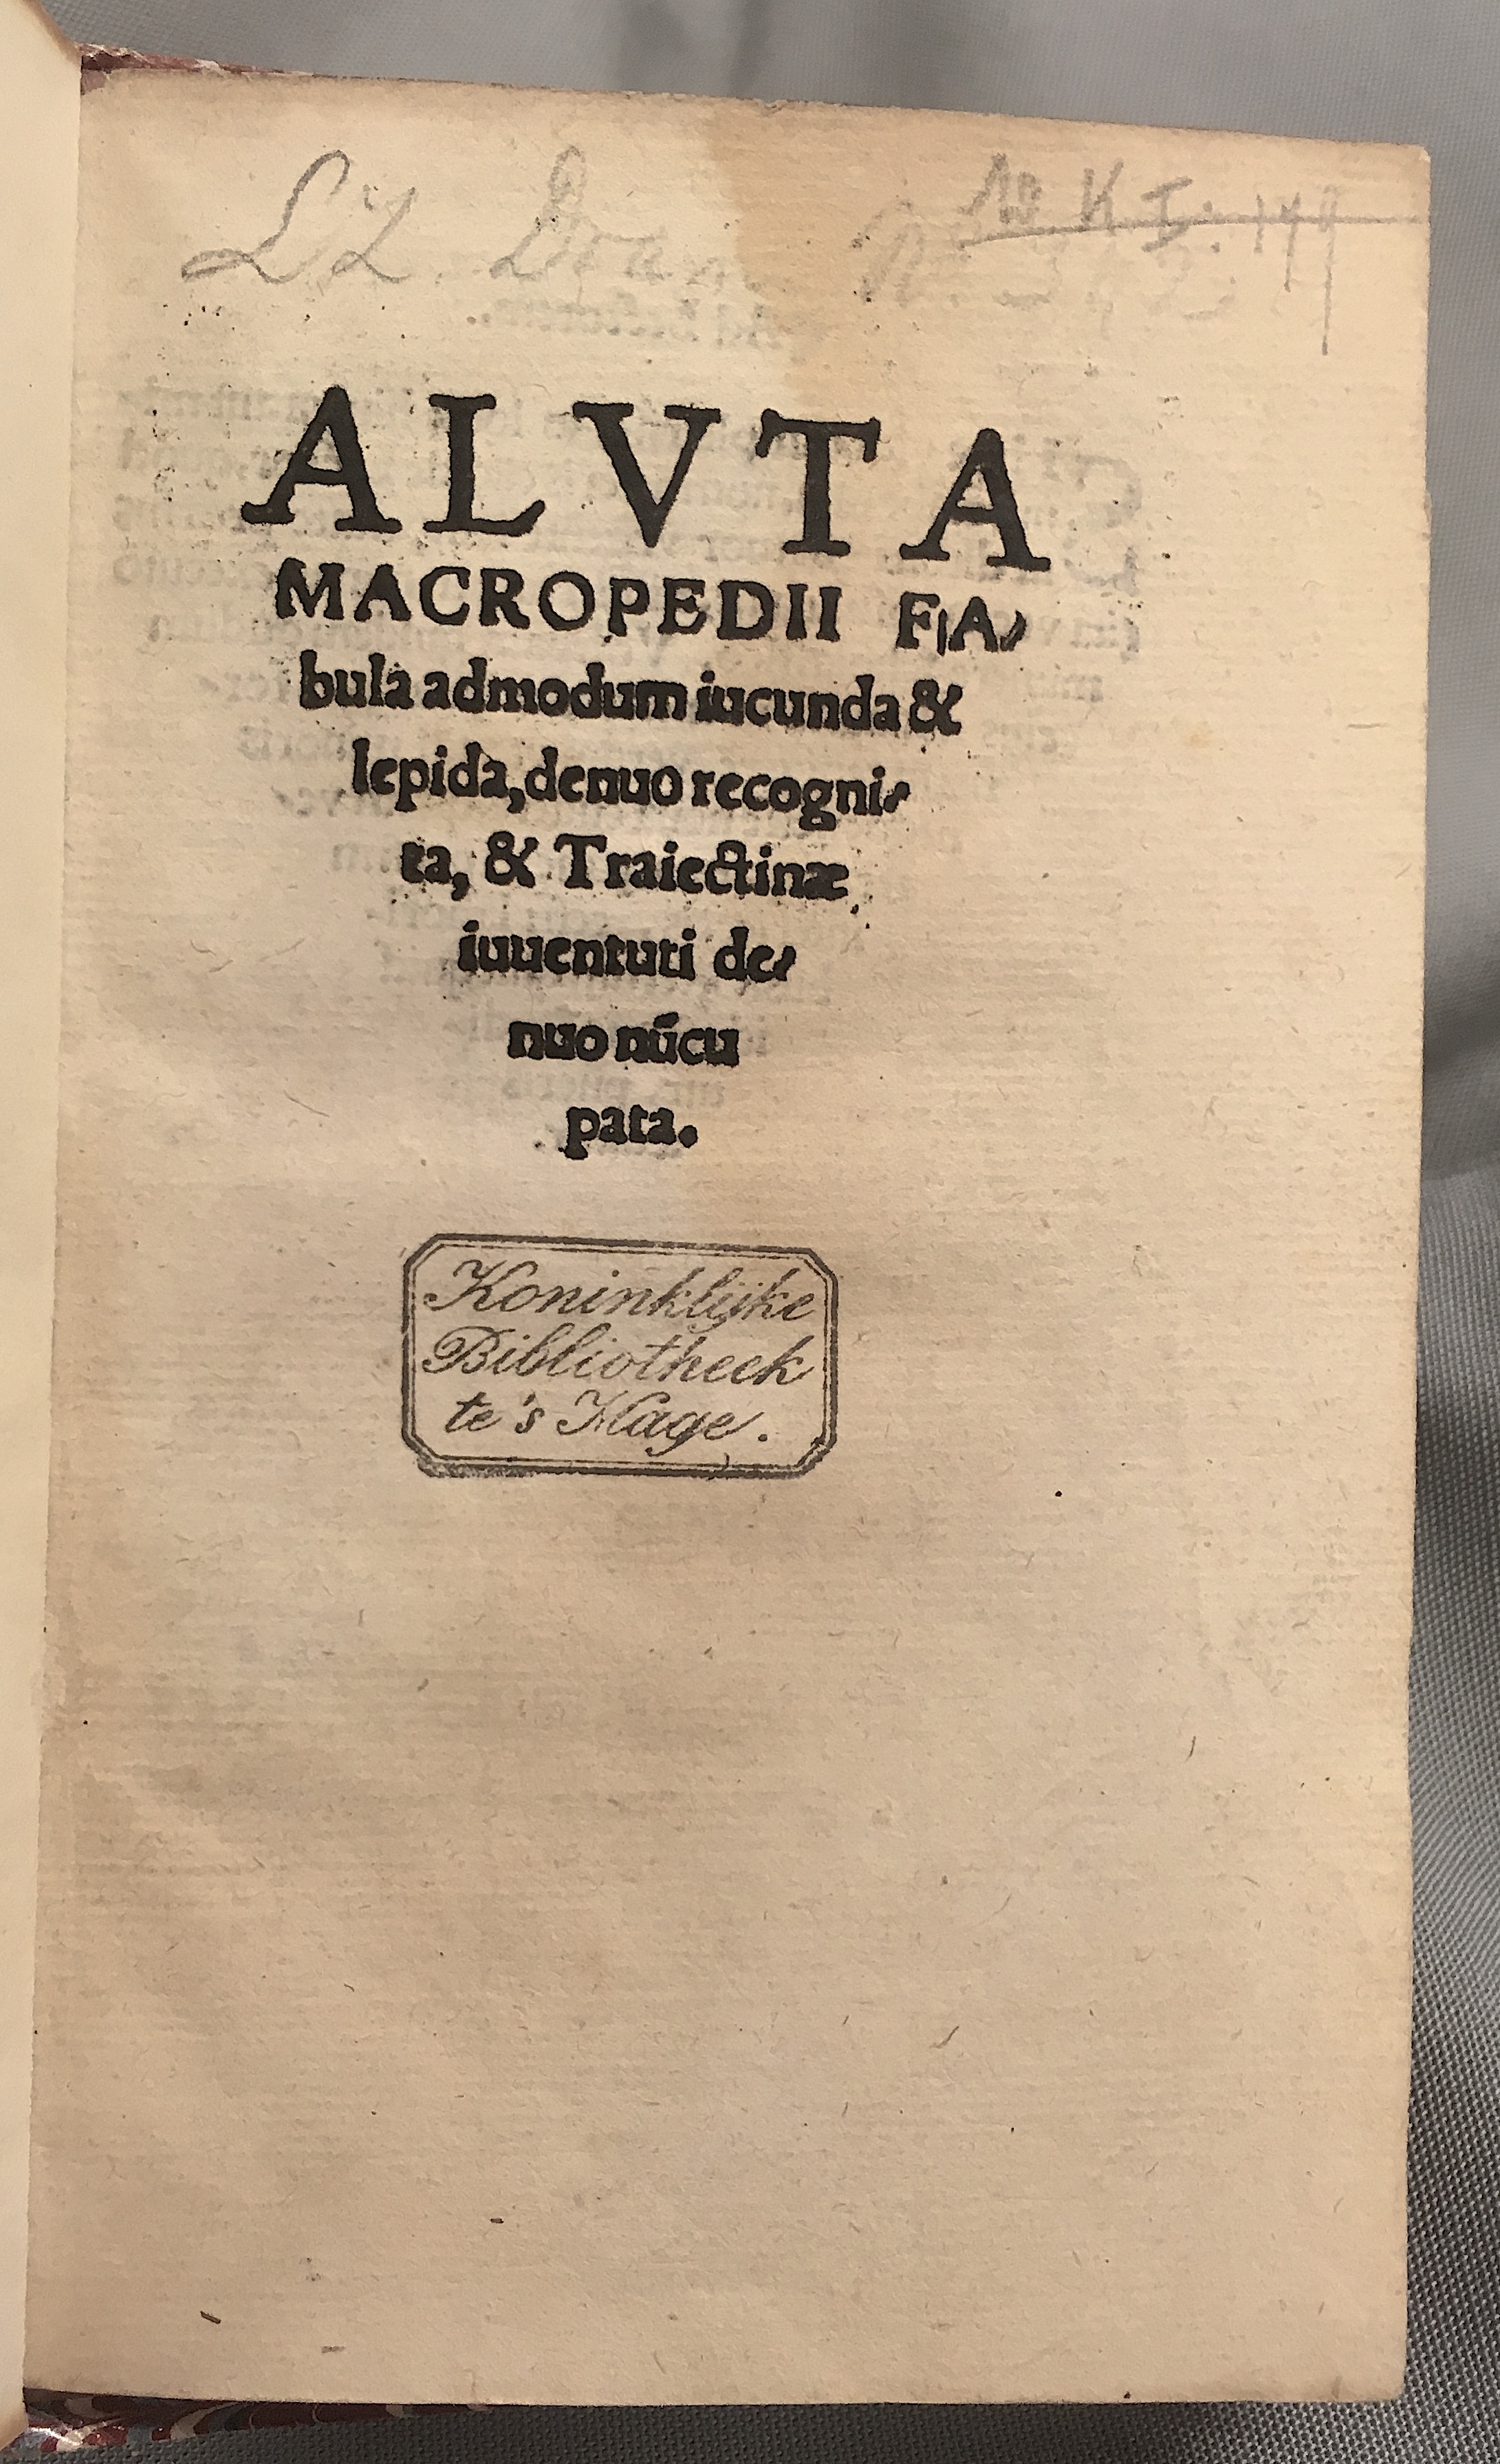 MacropediusAluta1539p01